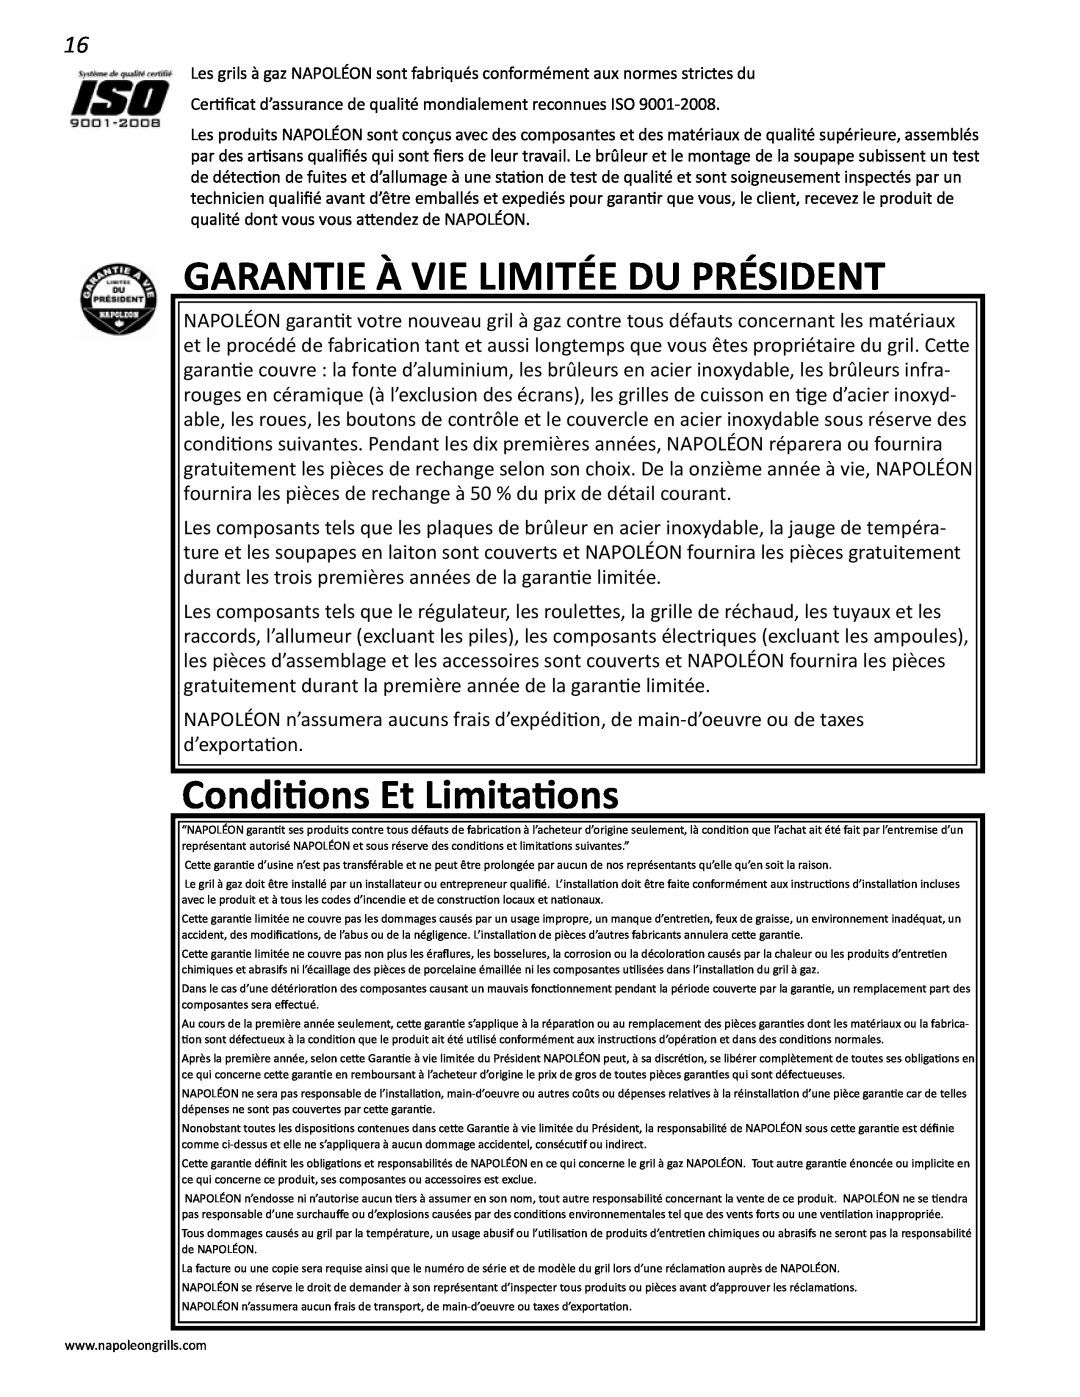 Napoleon Grills V 600, V 450 manual Garantie À Vie Limitée Du Président, Conditions Et Limitations 